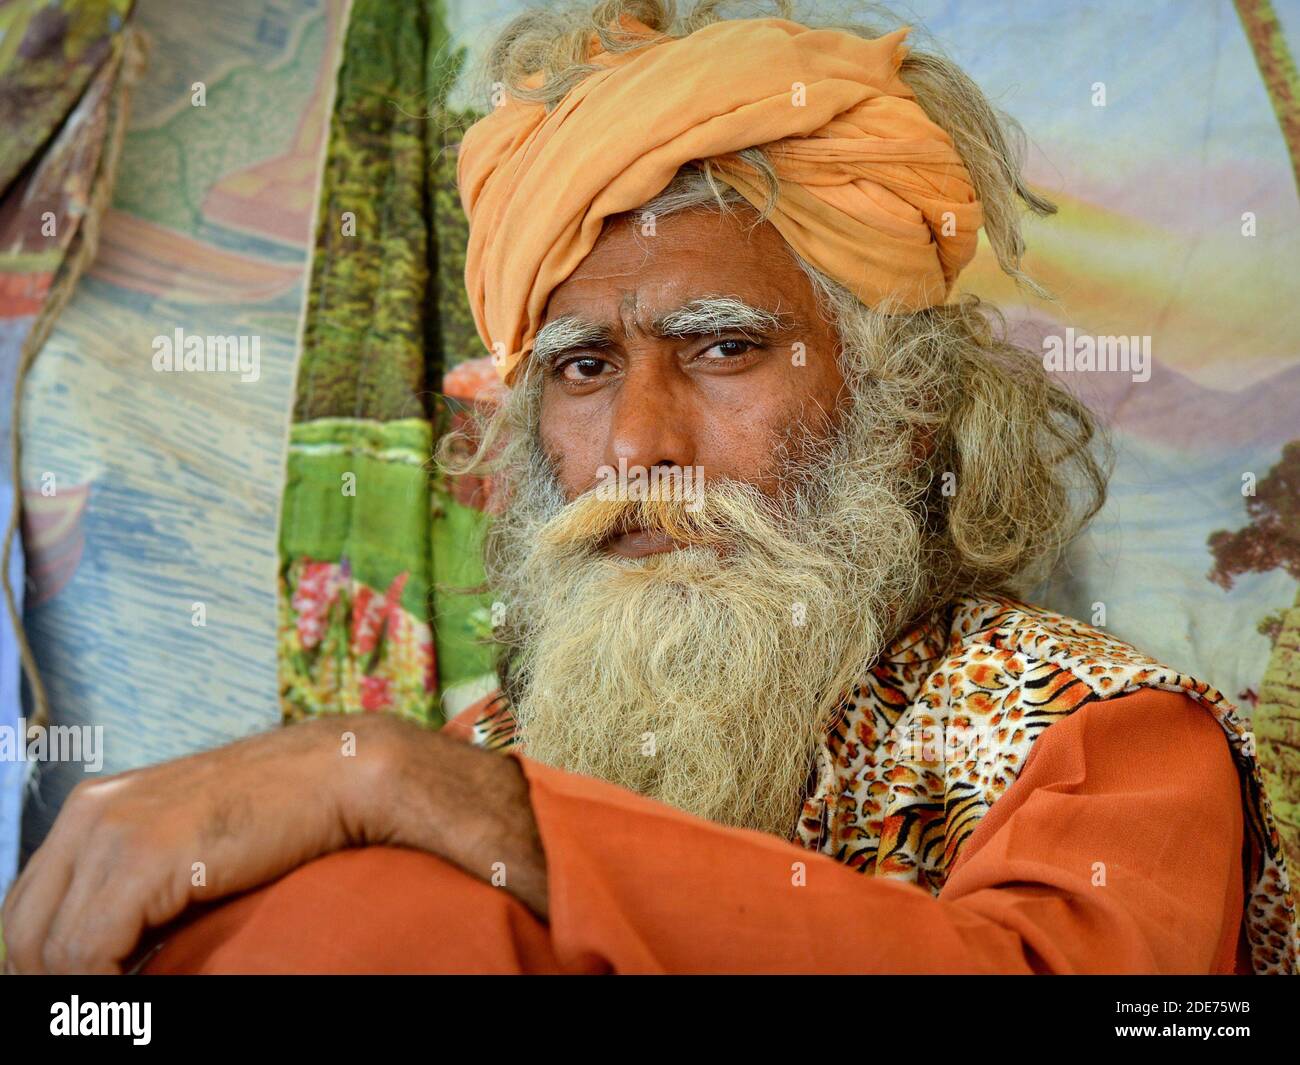 Sadhu de Shaivita India de mediana edad con pelo gris y barba gruesa posan para la cámara durante la Shivratri Mela (Feria de Bhavnath). Foto de stock